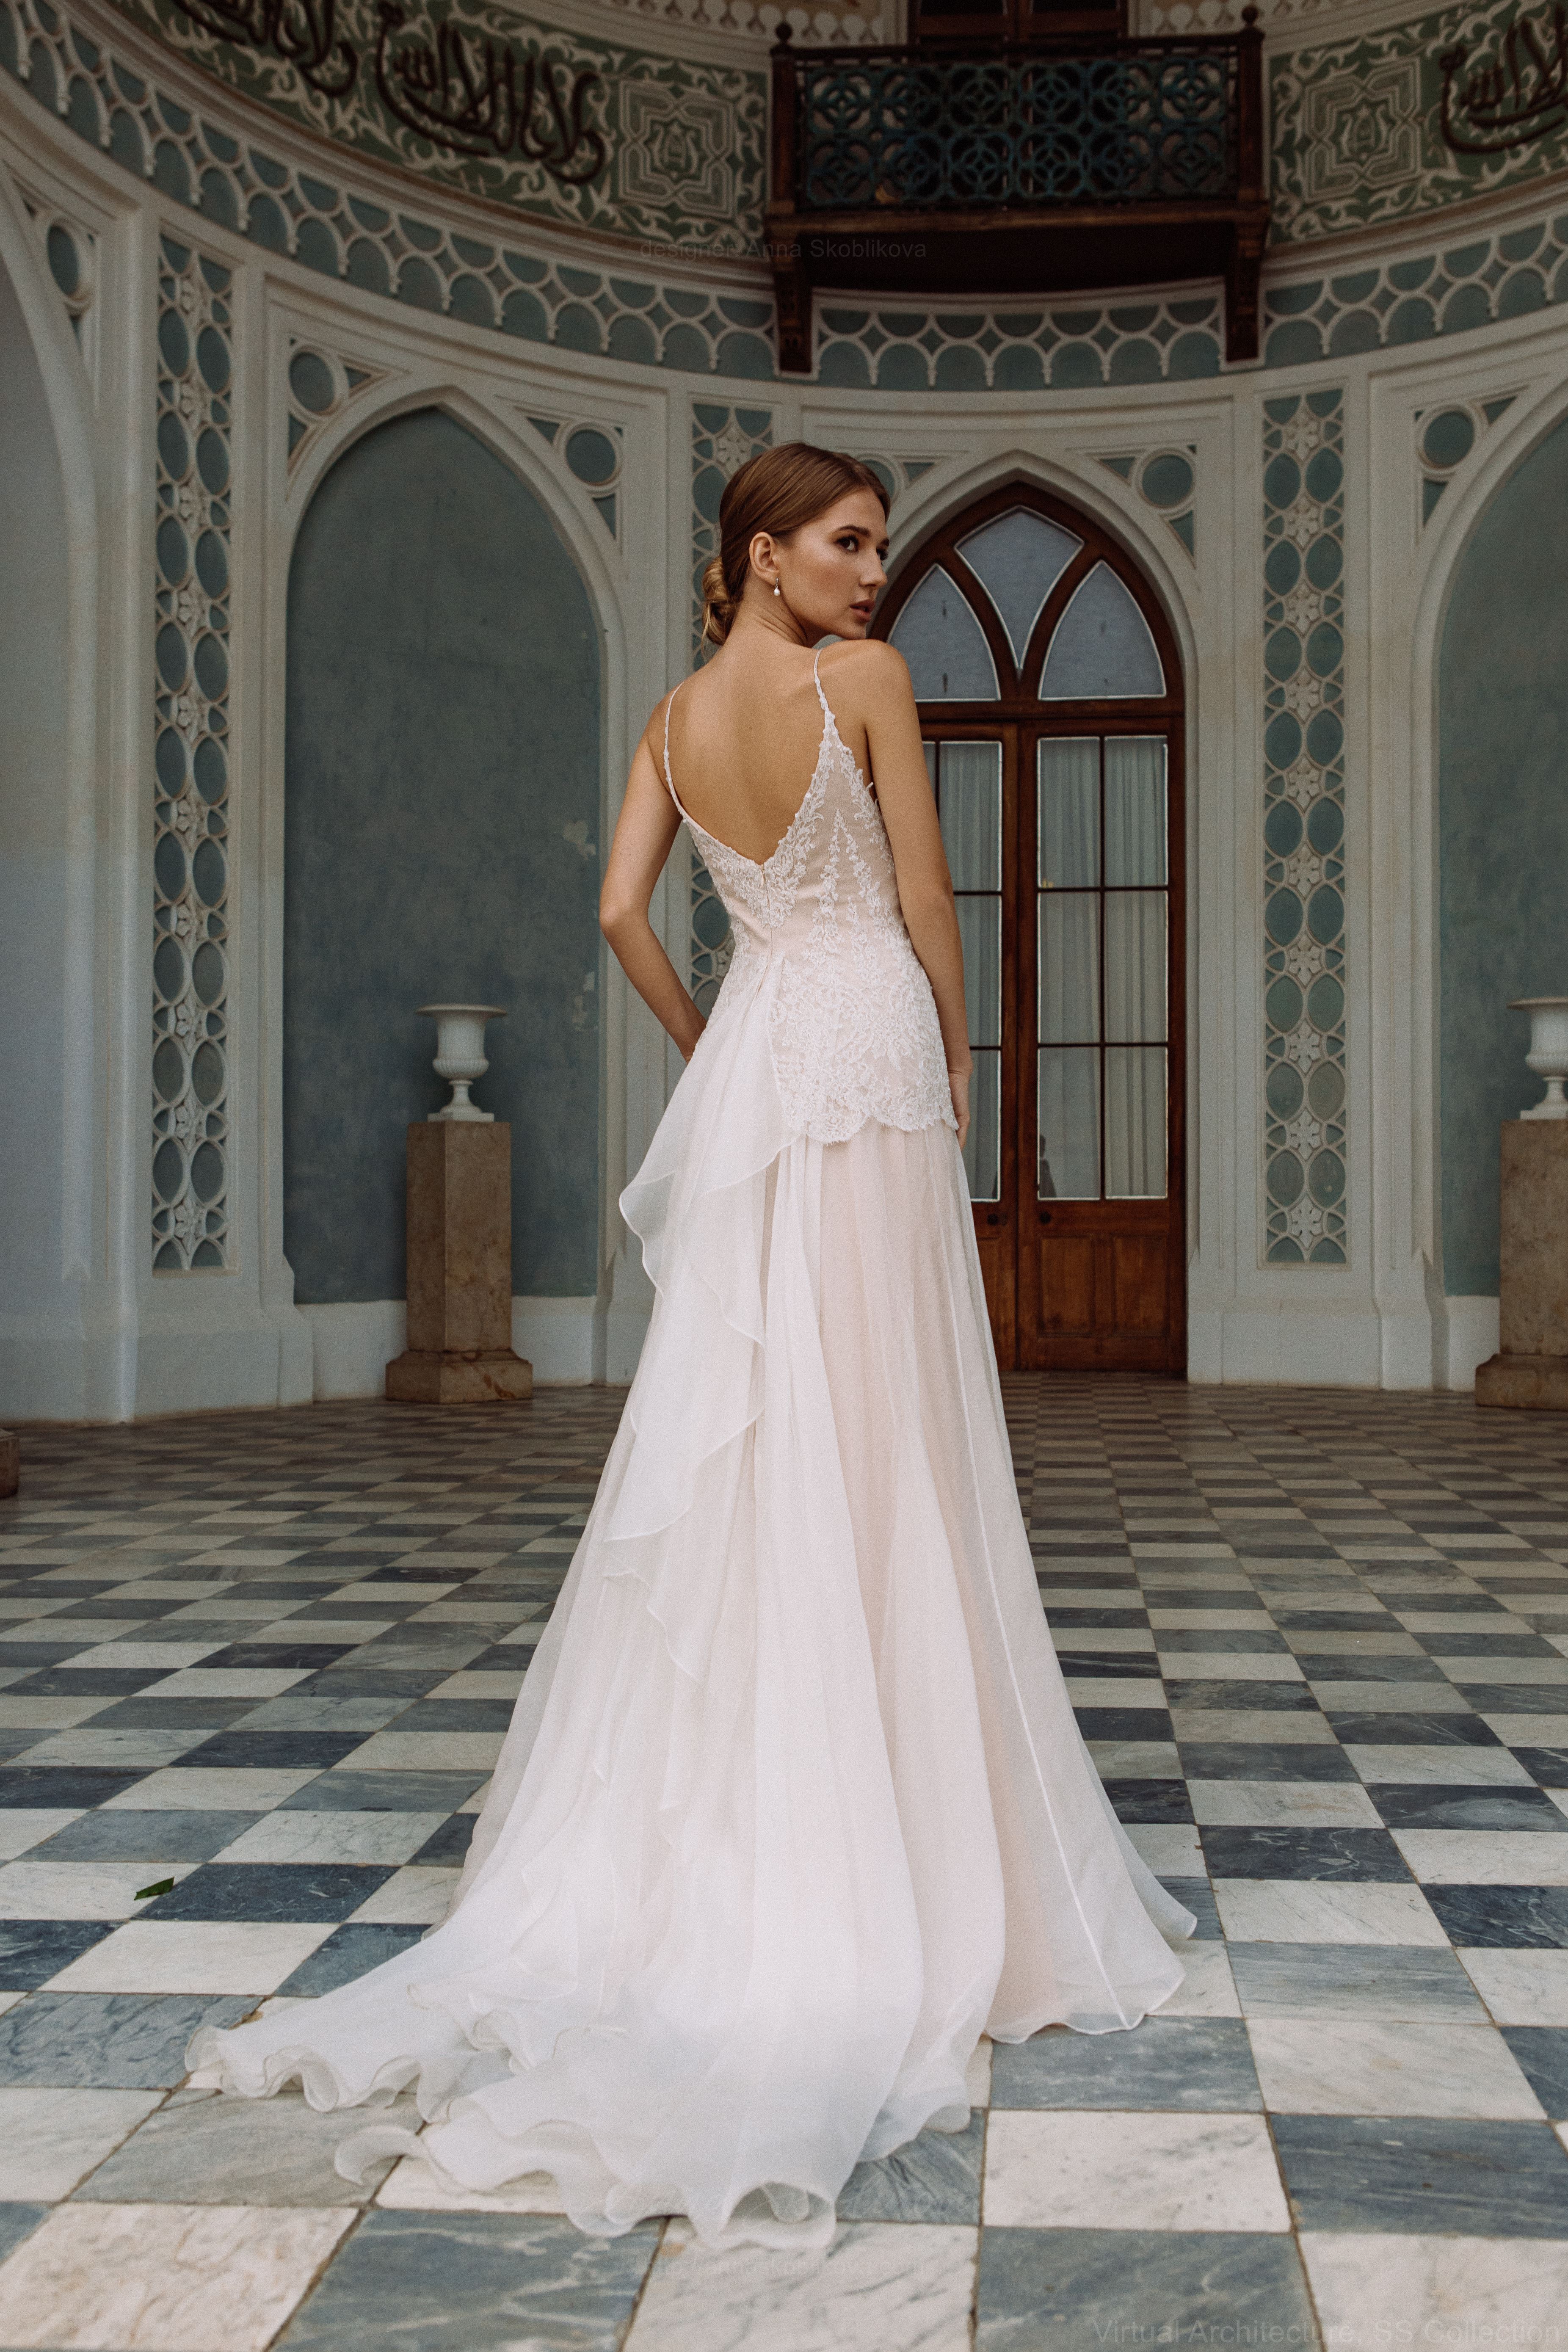 Luxury shiny lace wedding dress. Summer backless sleeveless bridal